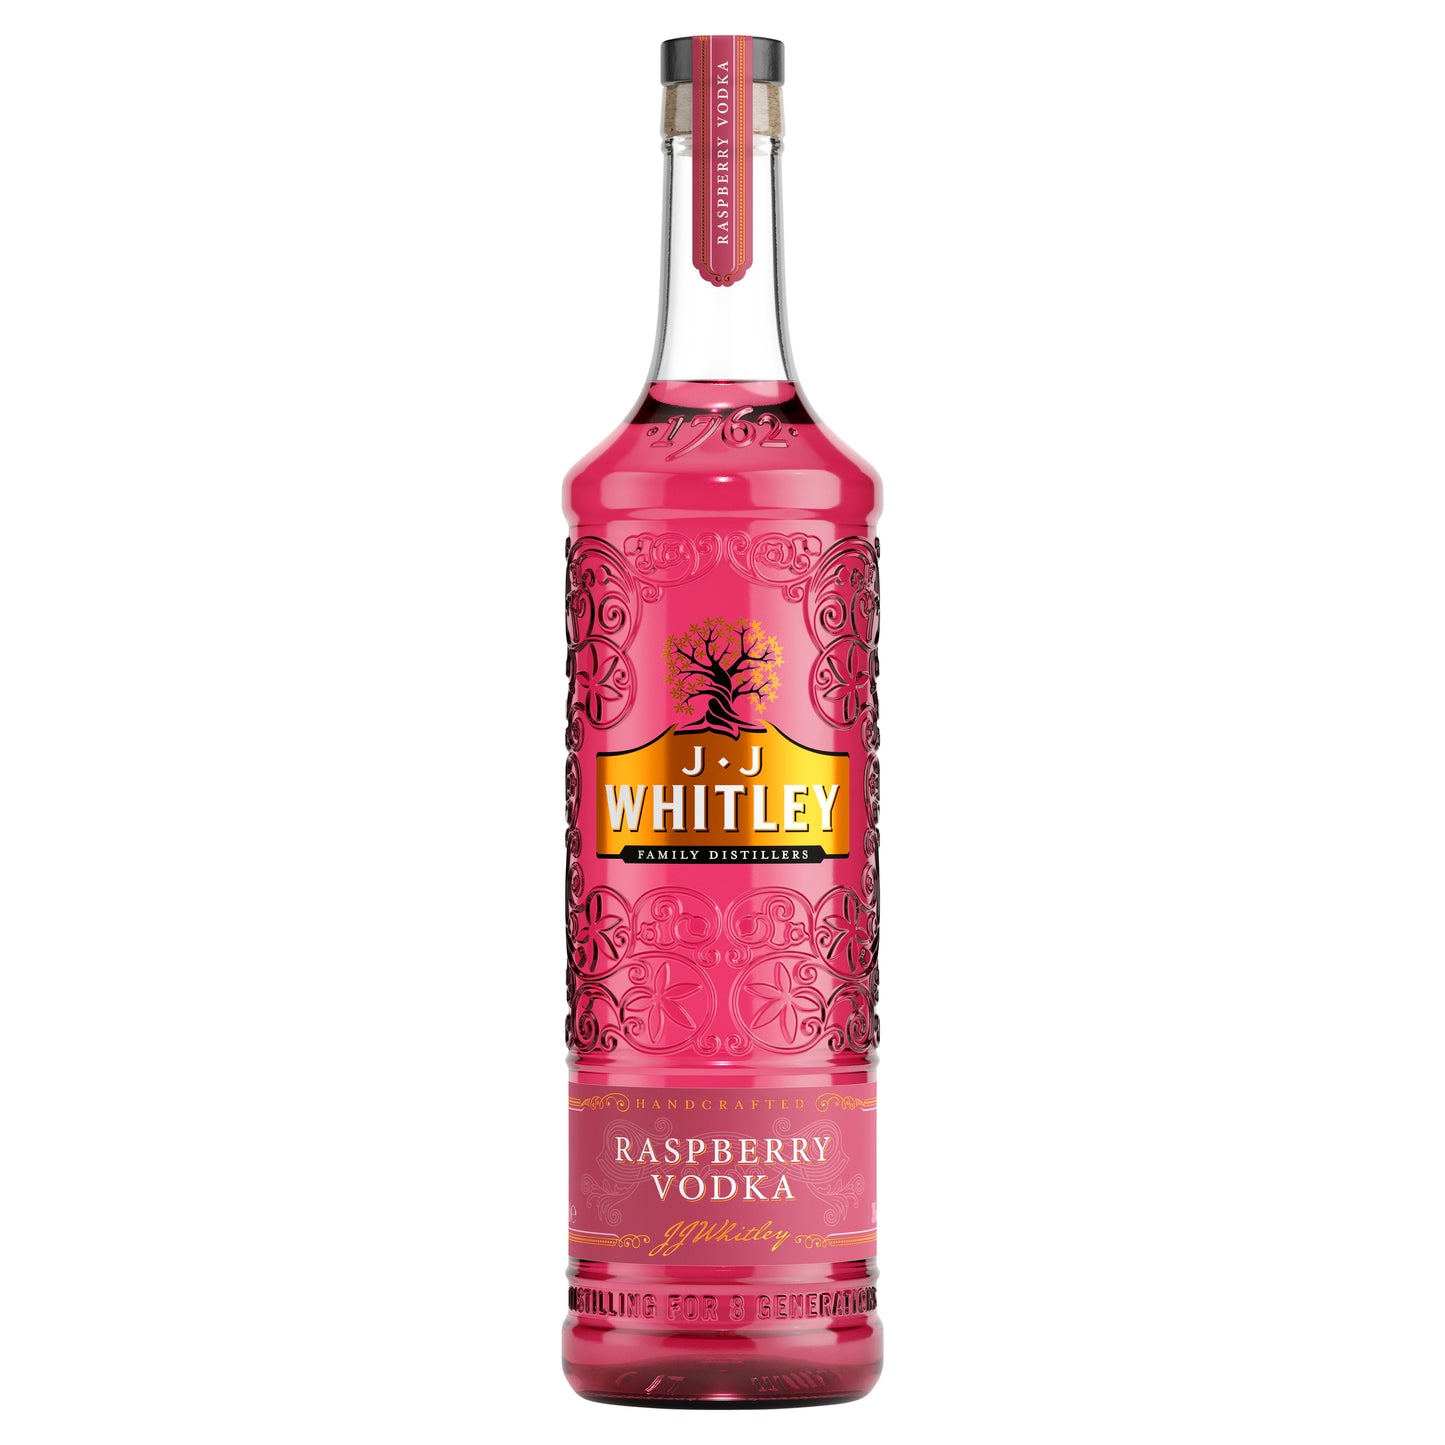 JJ Whitley Raspberry Vodka 700ml